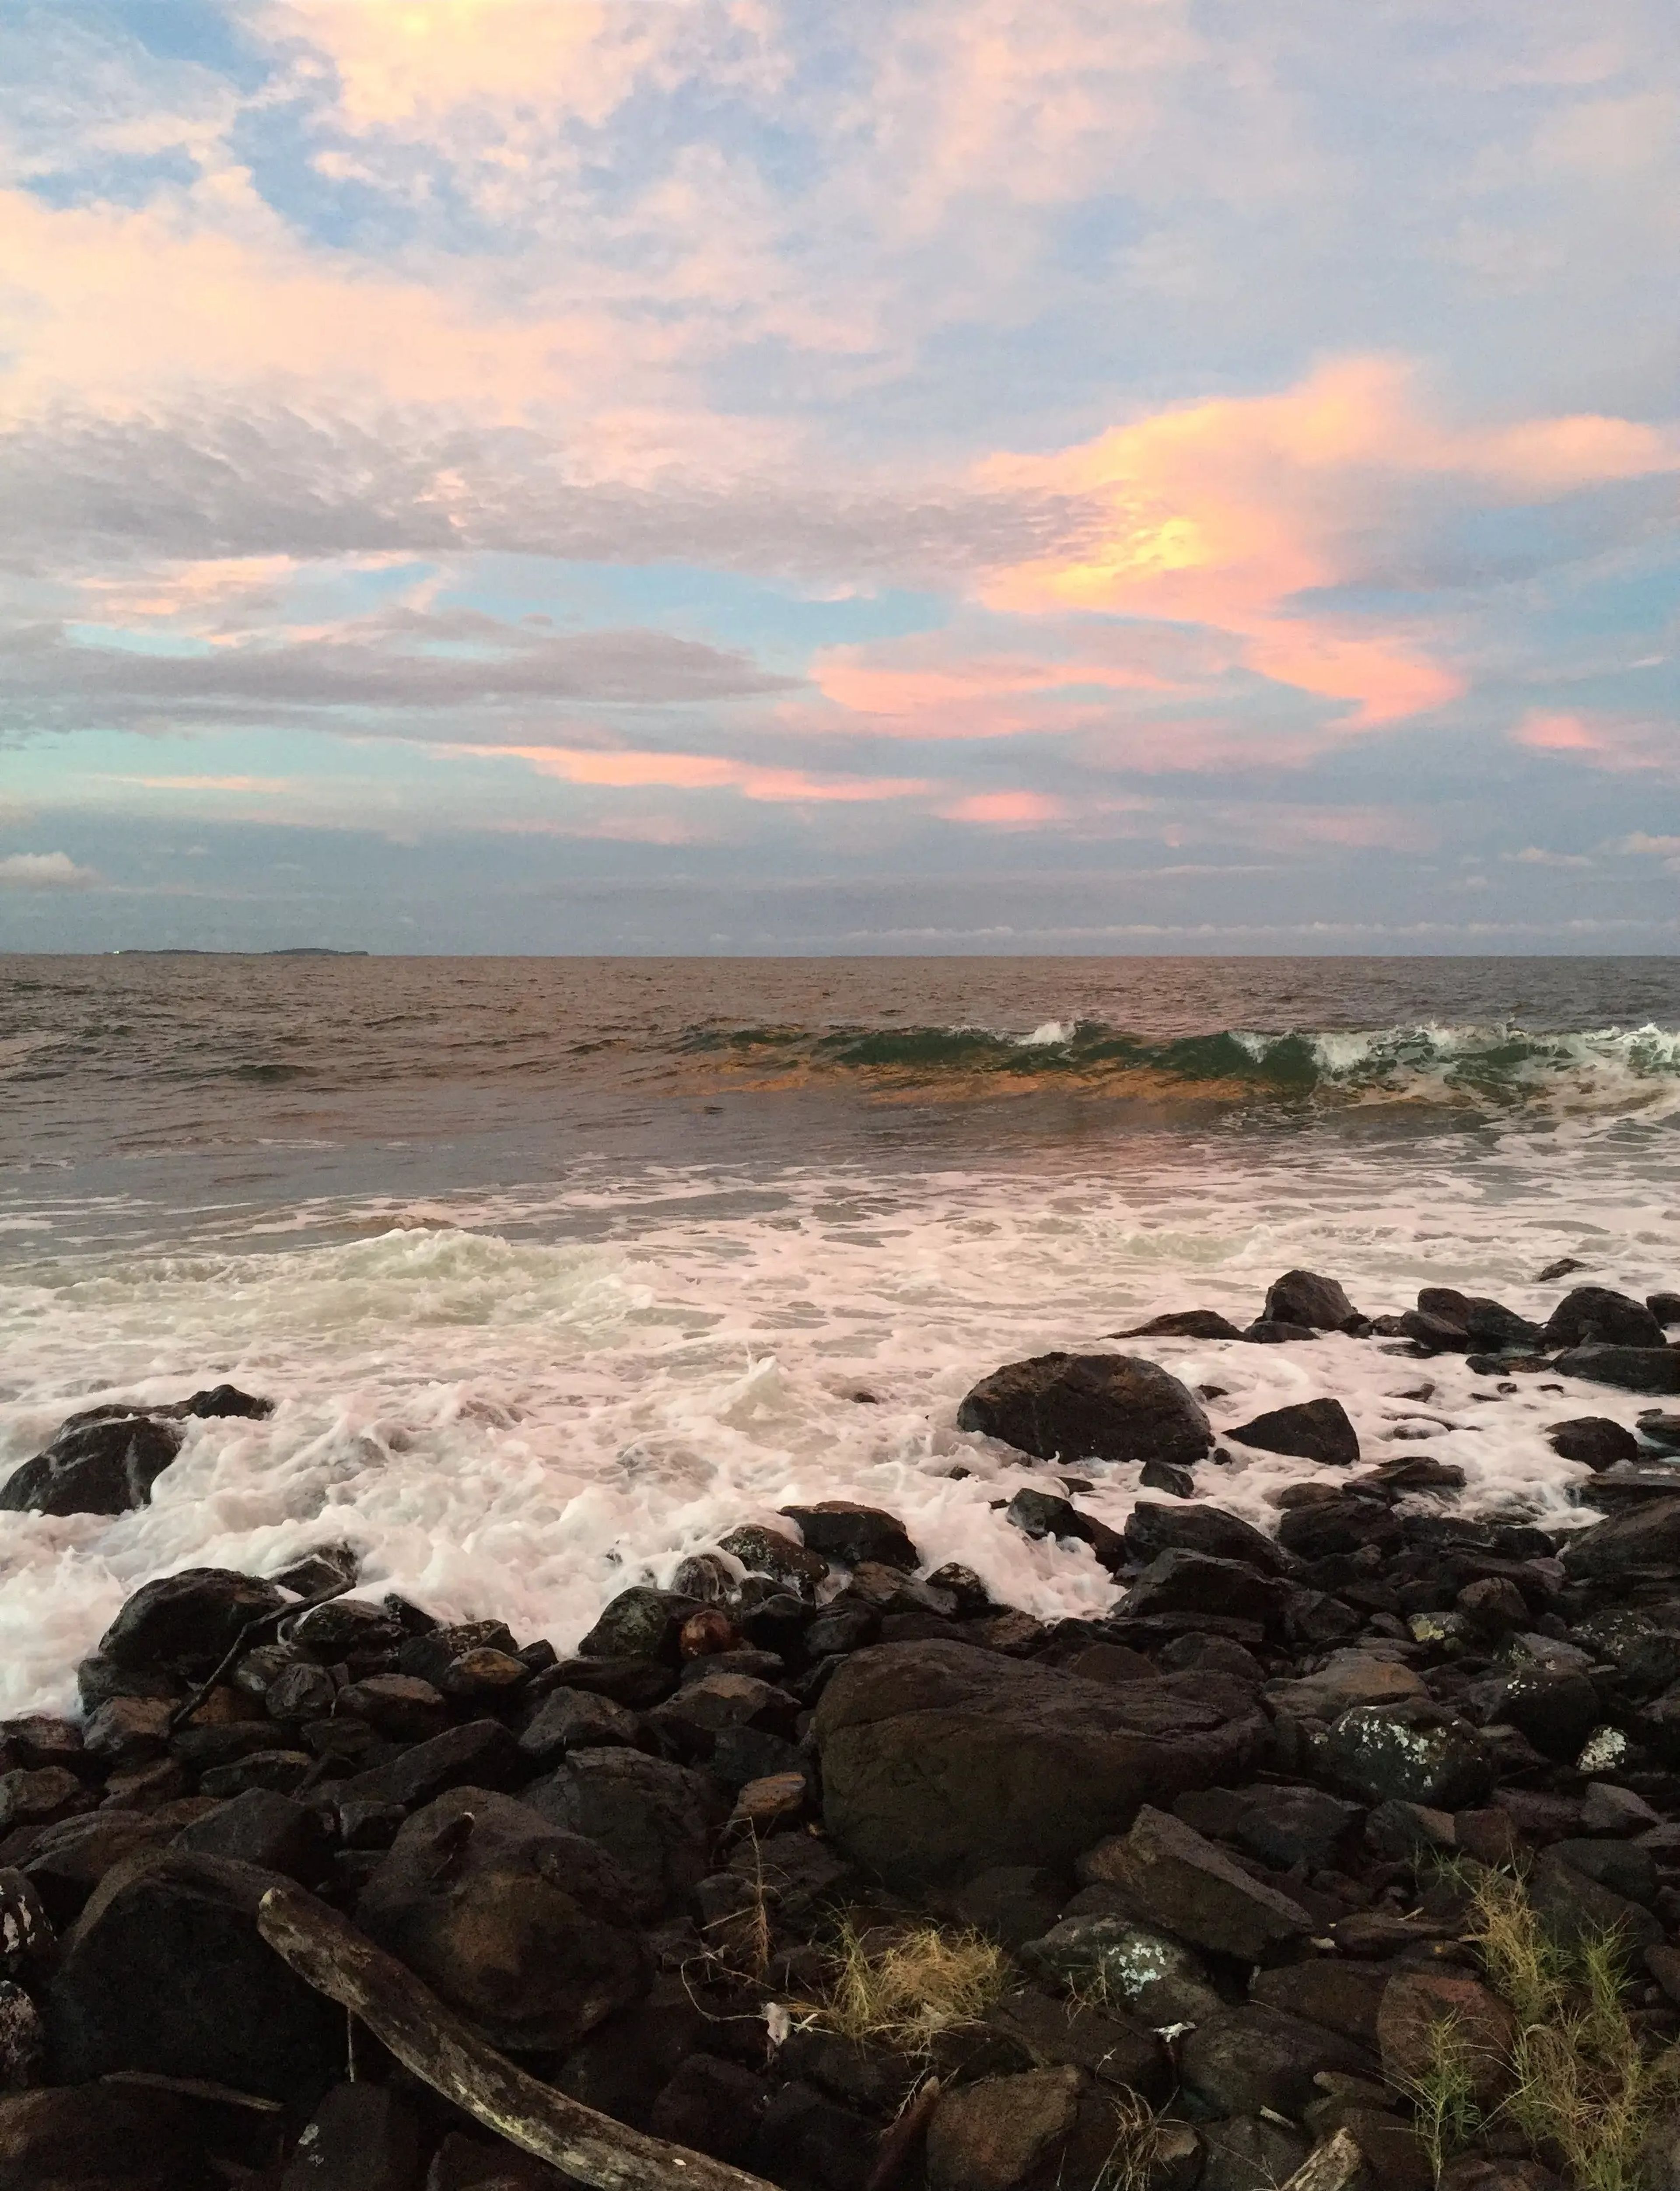 Sunset at Iguana Island